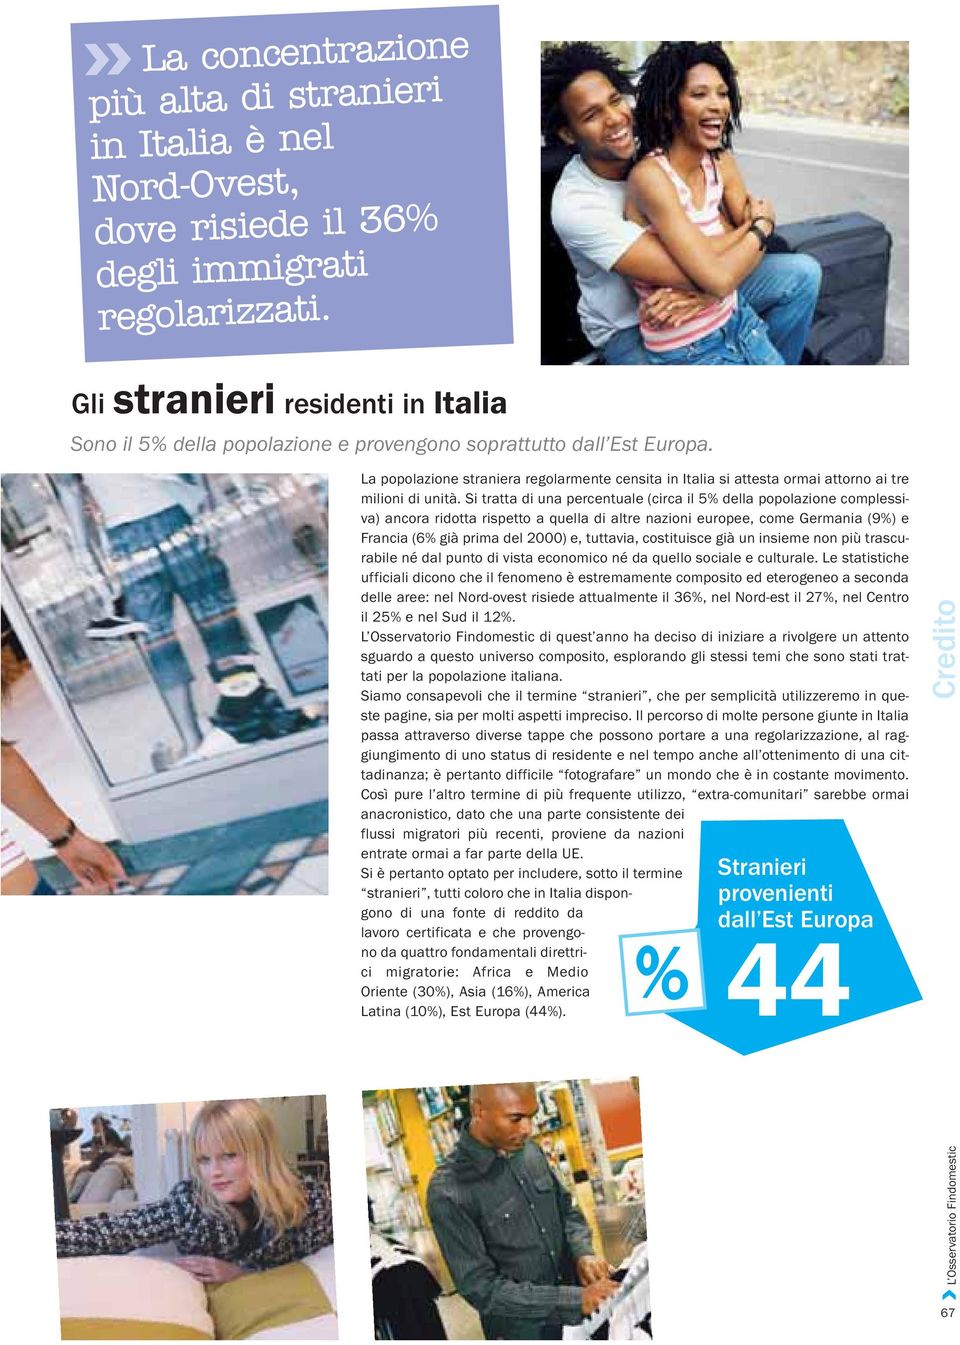 La popolazione straniera regolarmente censita in Italia si attesta ormai attorno ai tre milioni di unità.